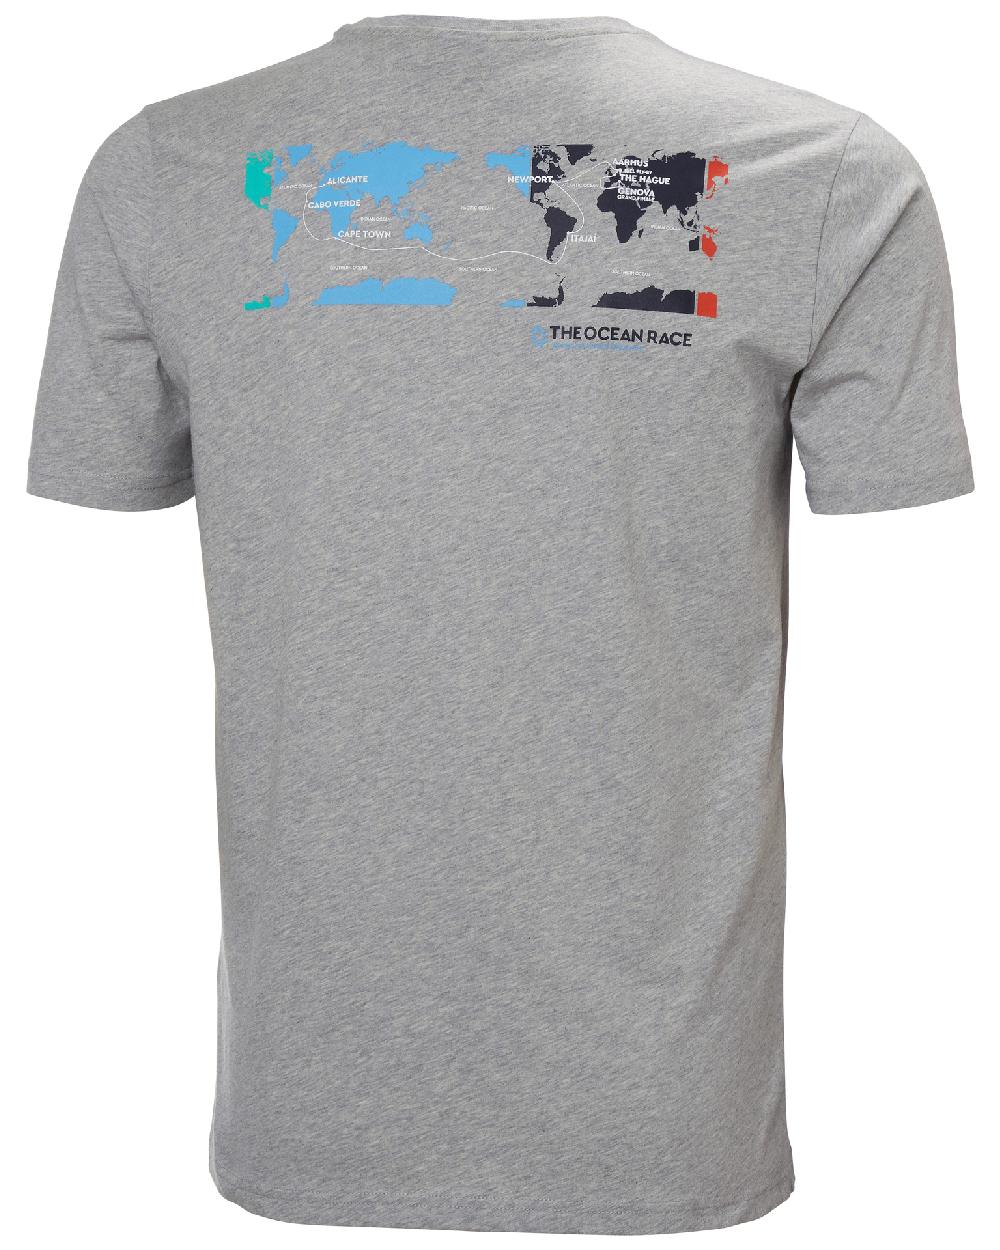 Grey Melange Ii coloured Helly Hansen Mens Ocean Race T-Shirt on white background 